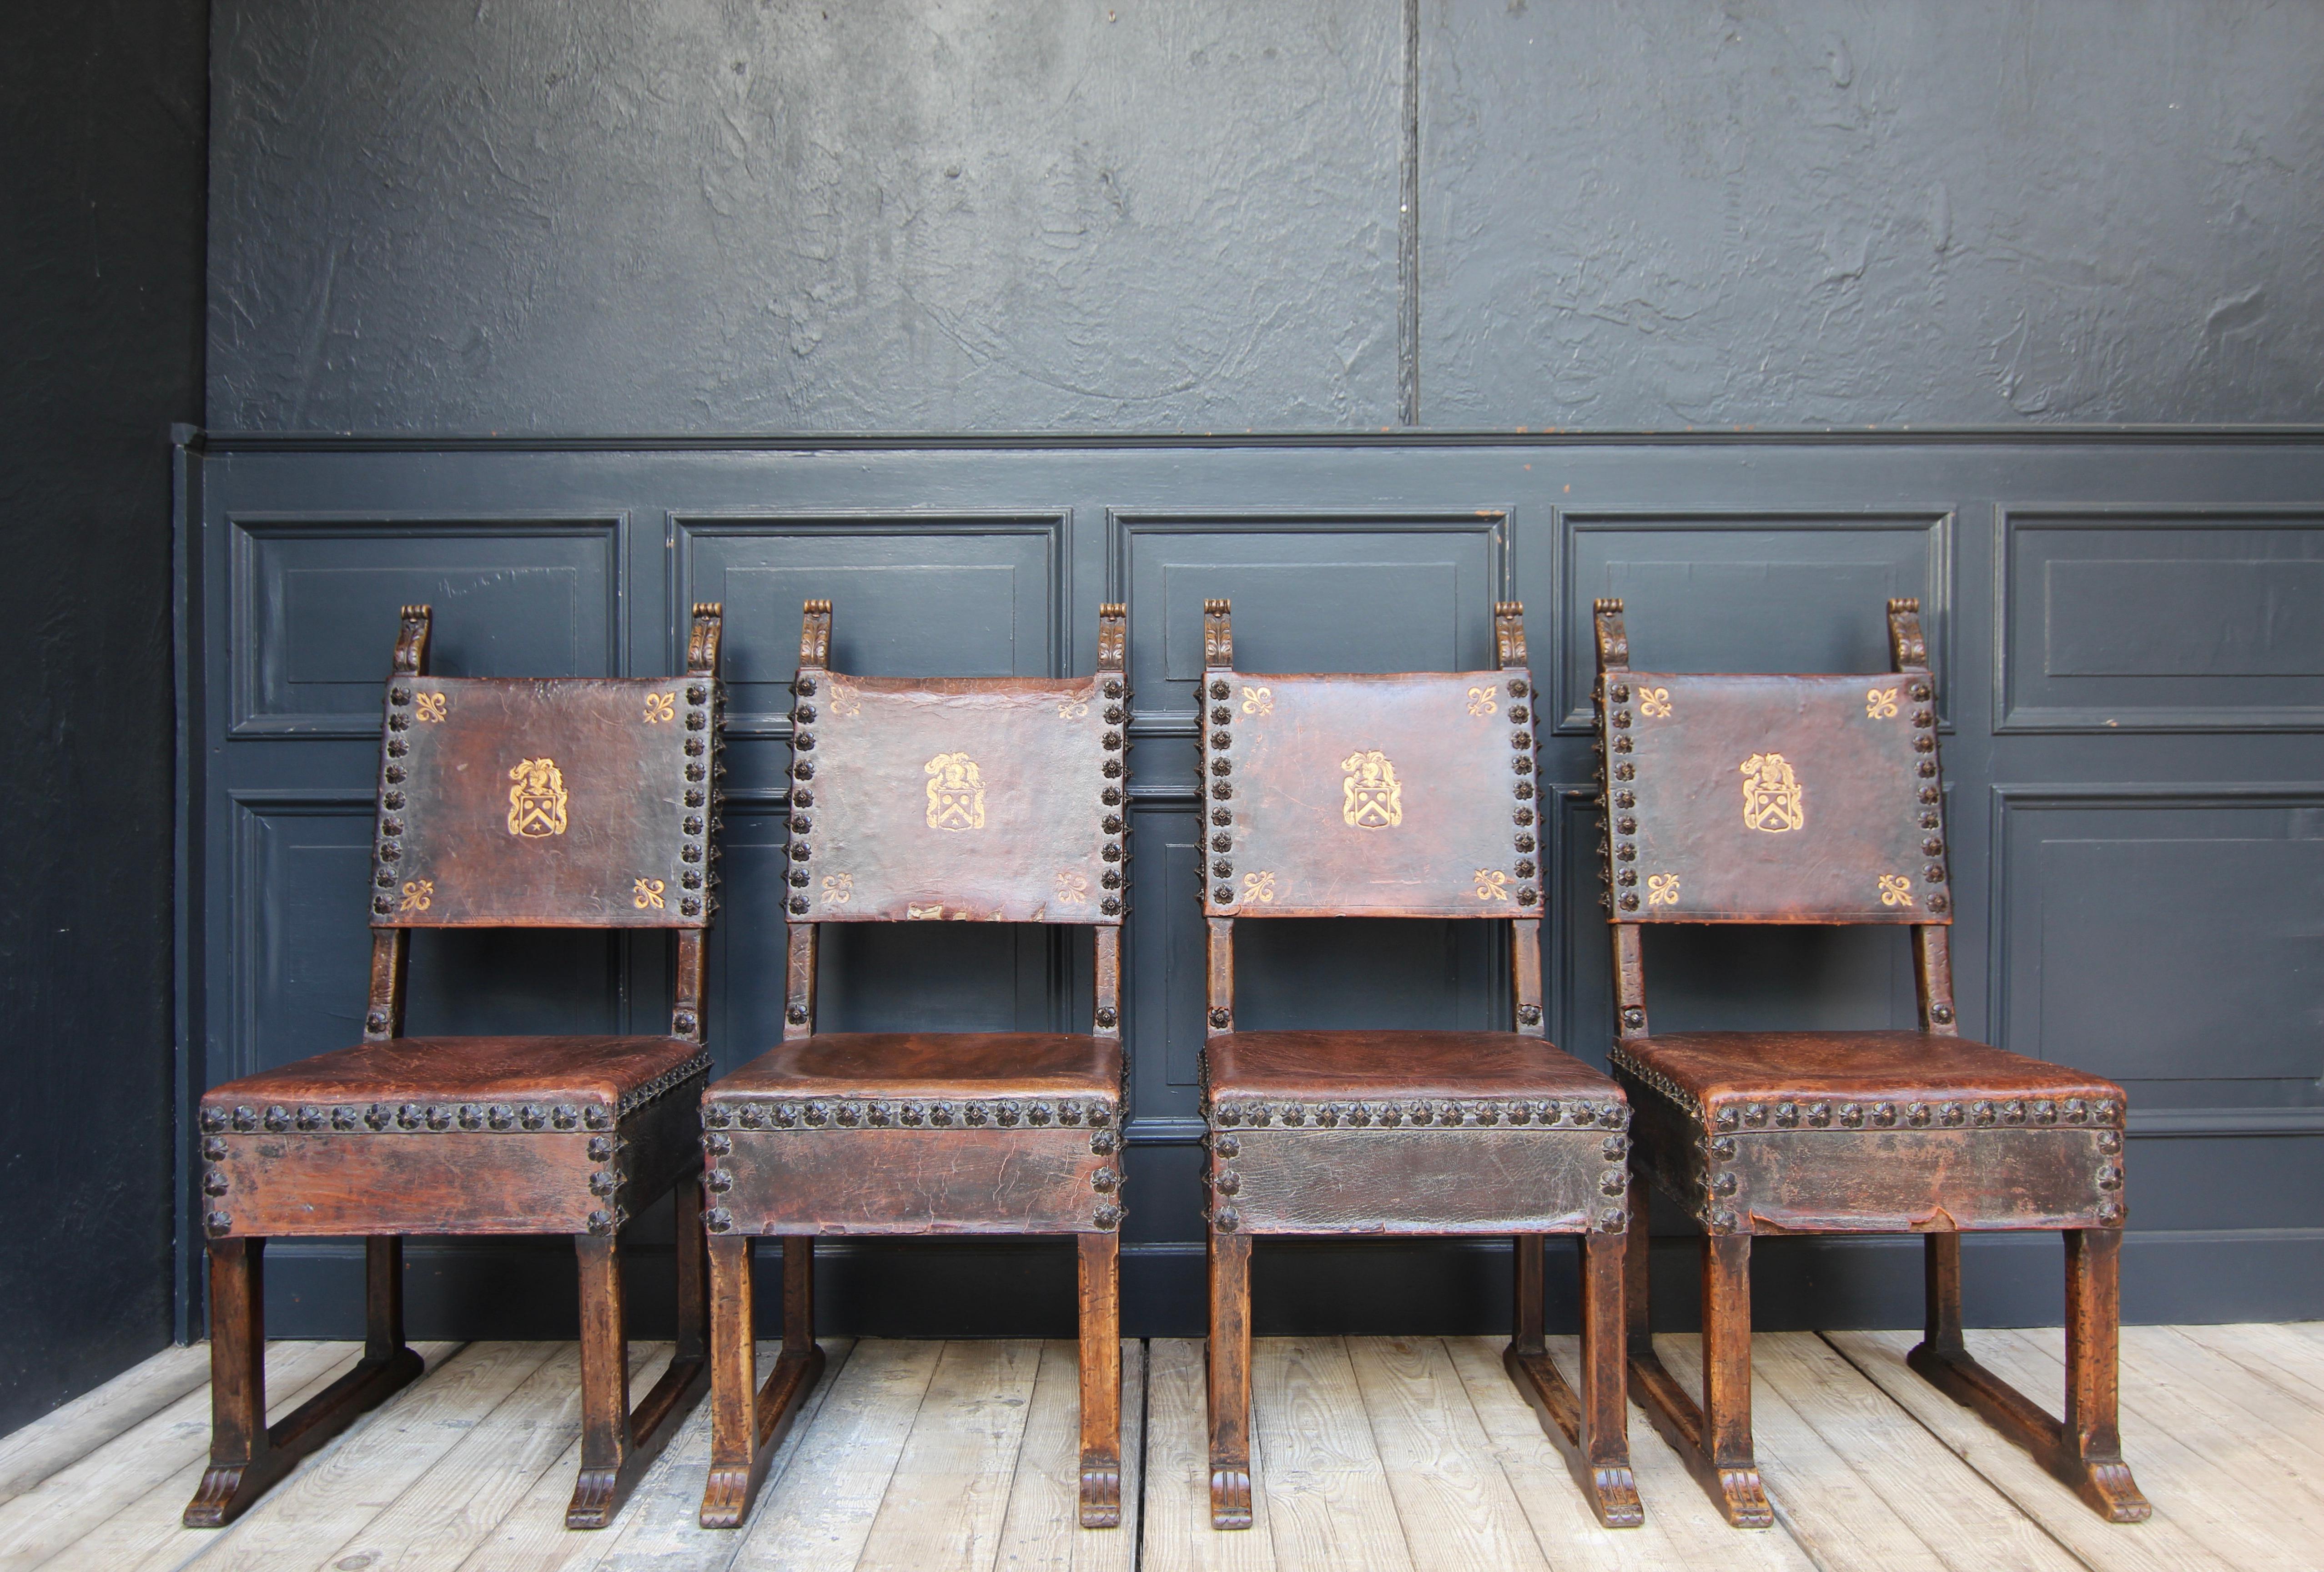 Satz von 4 Stühlen des renommierten Herstellers Maison Krieger aus Paris. Wahrscheinlich Ende des 19. Jahrhunderts.

Hergestellt im Stil der italienischen Renaissance, wie sie im 16./17. Jahrhundert, insbesondere mit Armlehnen, nicht nur in